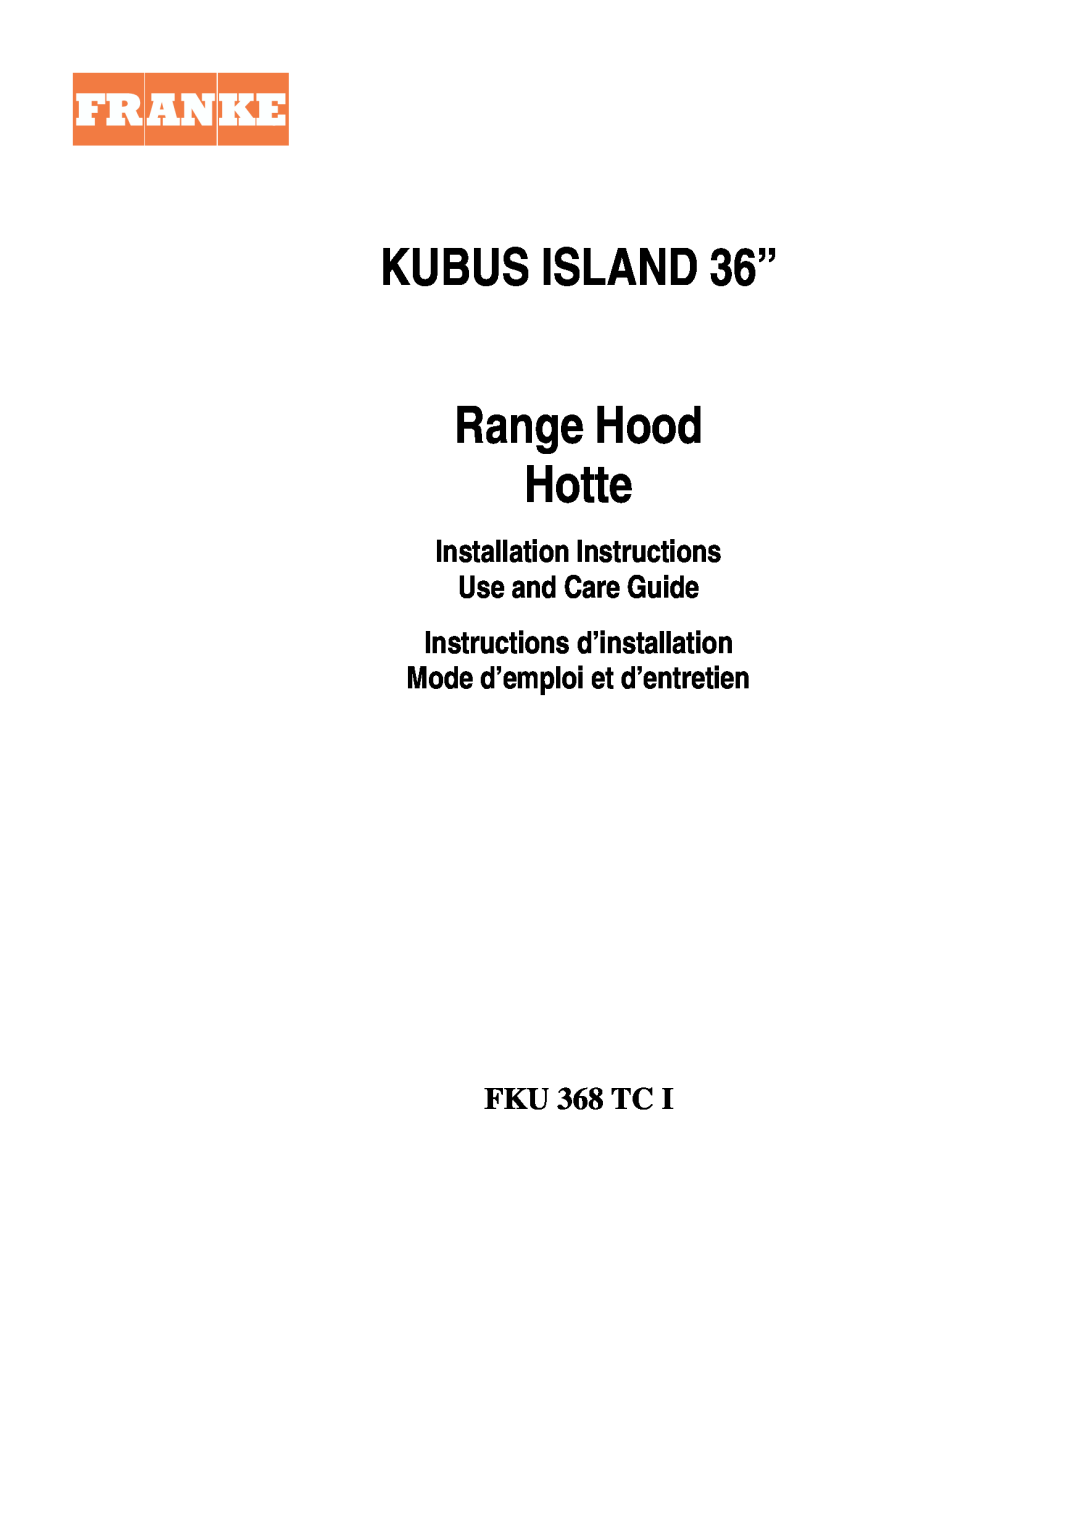 Franke Consumer Products FKU 368 TC I installation instructions KUBUS ISLAND 36”, Range Hood Hotte 